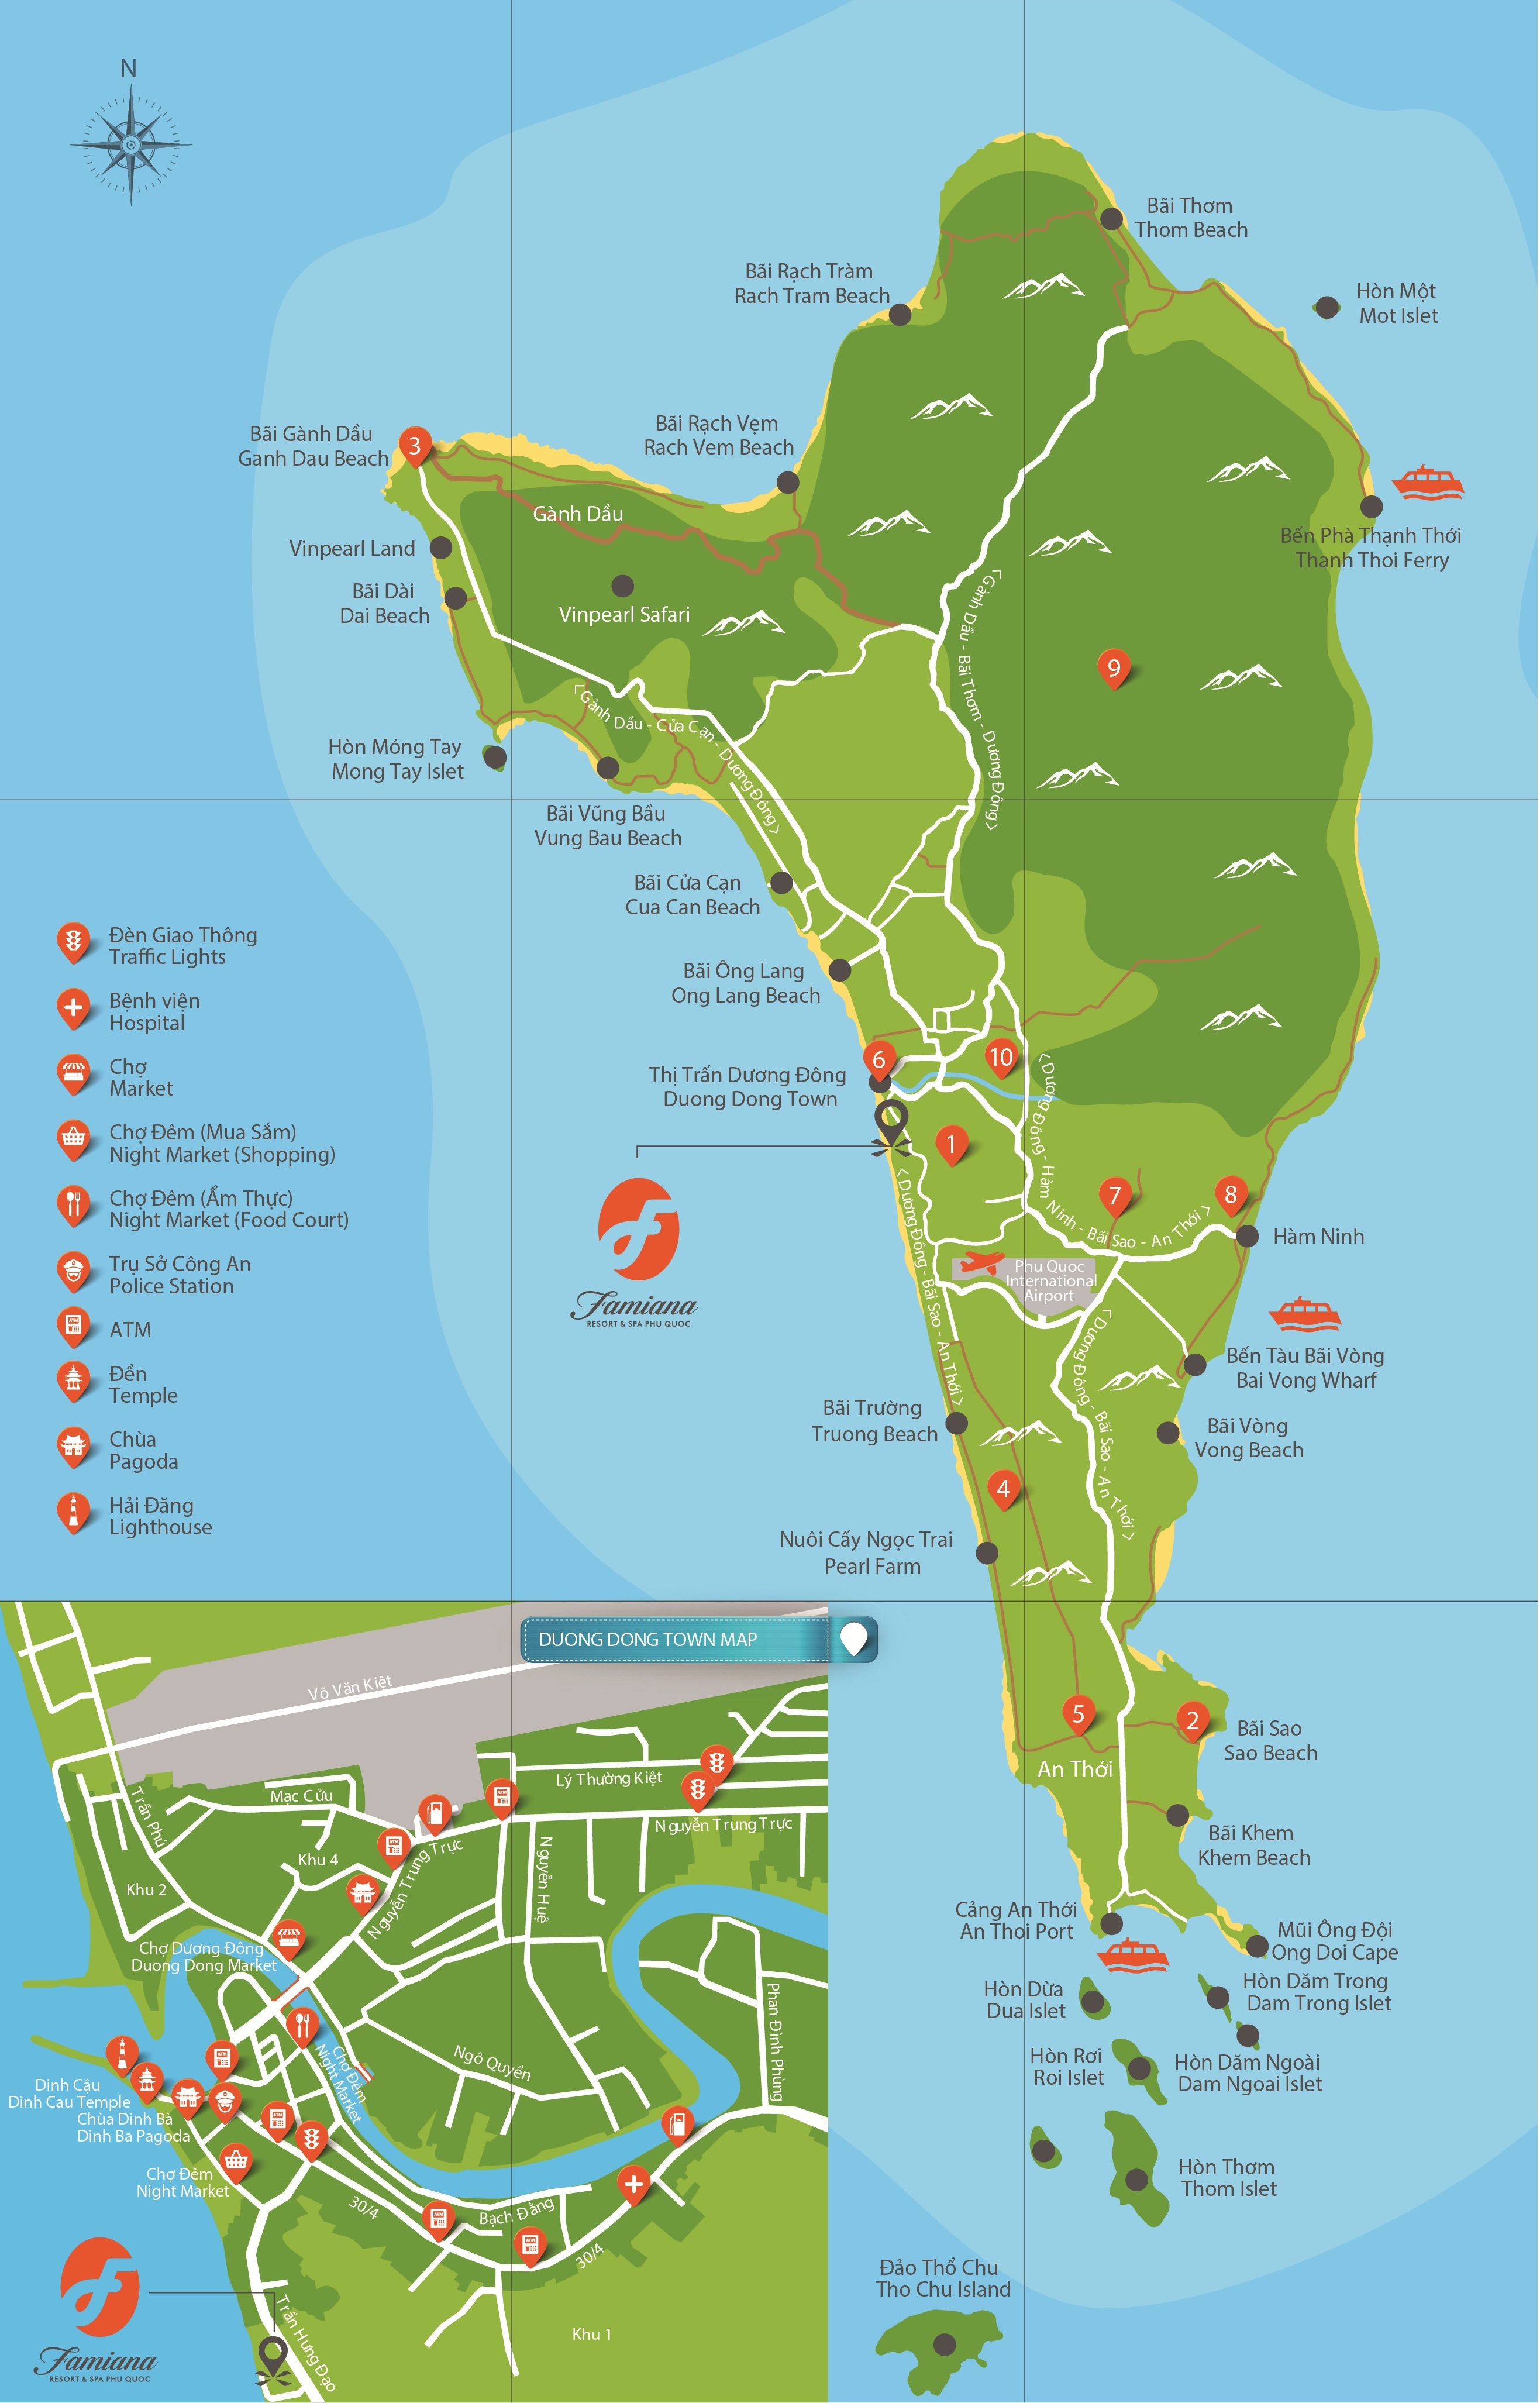 Hãy cùng khám phá và tận hưởng trọn vẹn vẻ đẹp của đảo Phú Quốc!